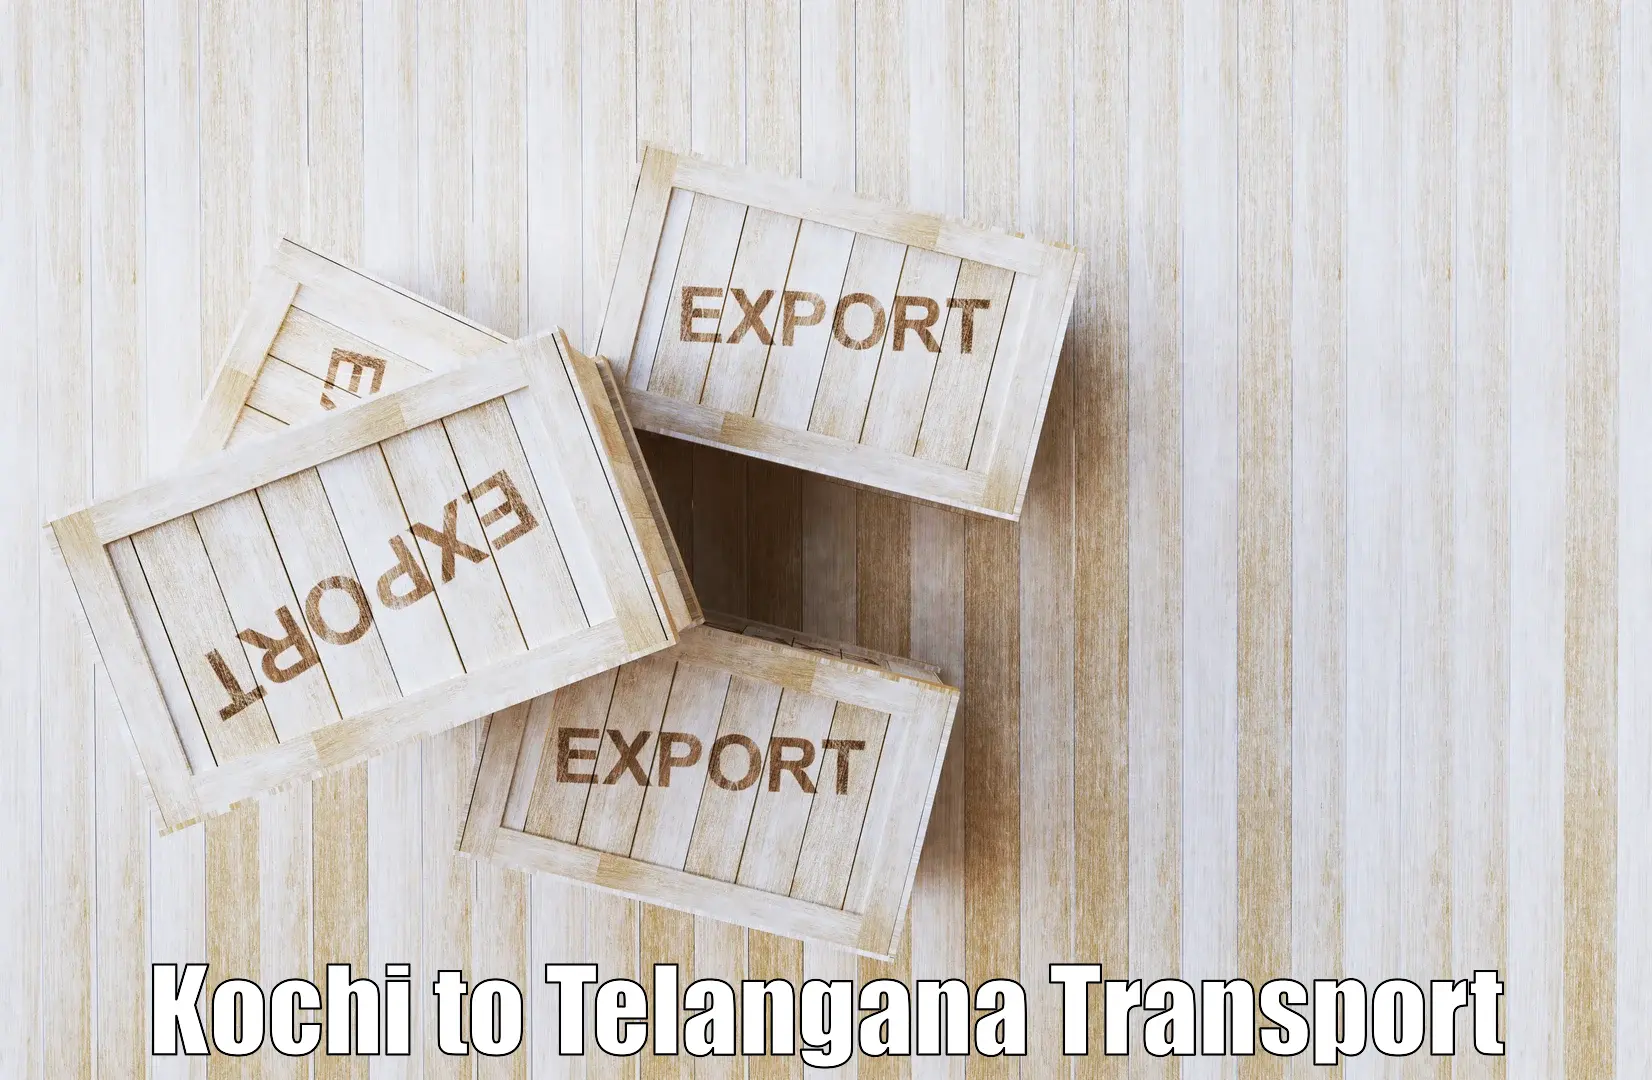 Best transport services in India Kochi to Manuguru